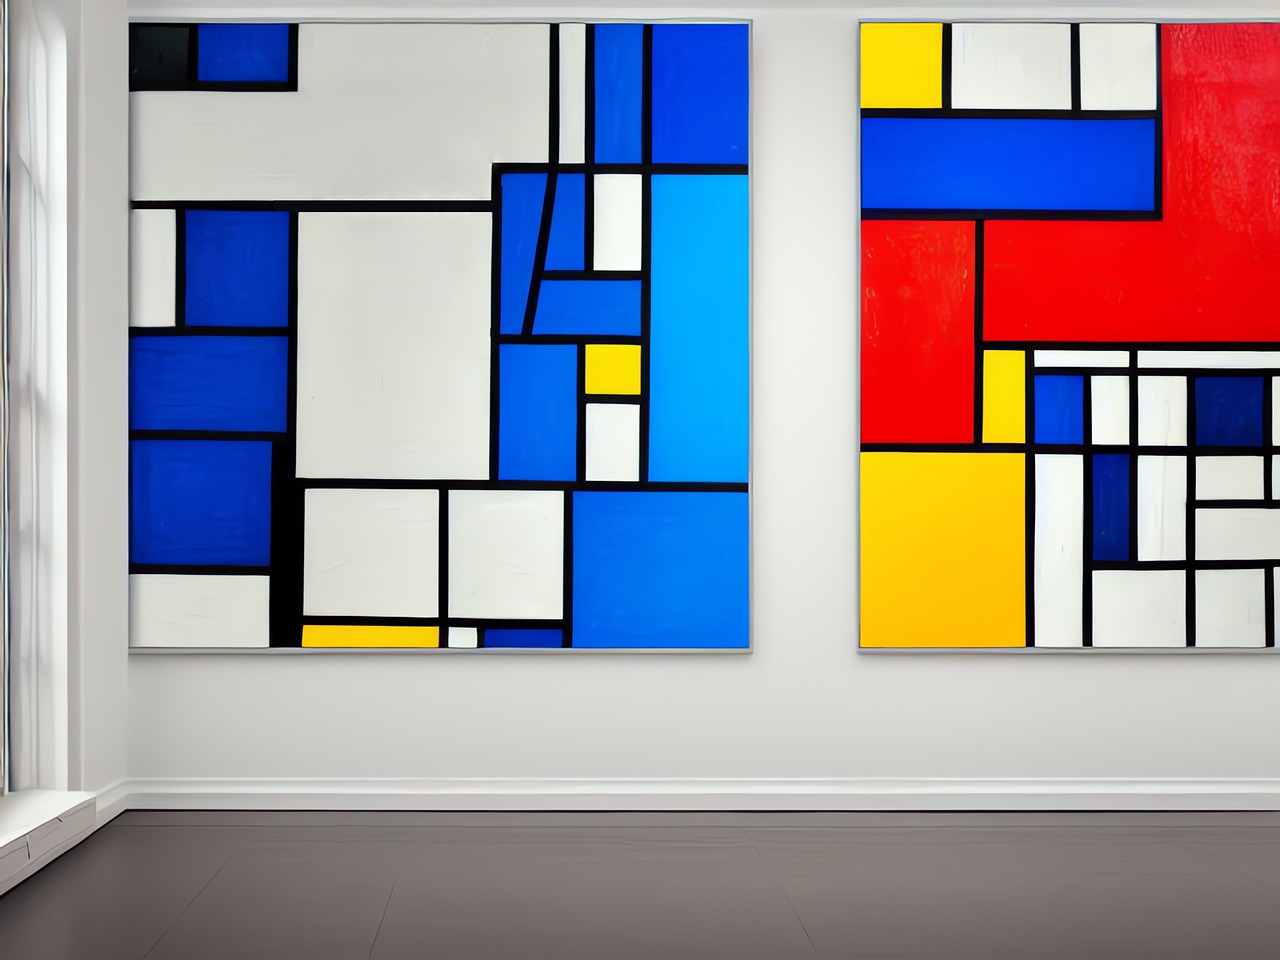 ¿Que comunica la obra Composición A de Piet Mondrian?